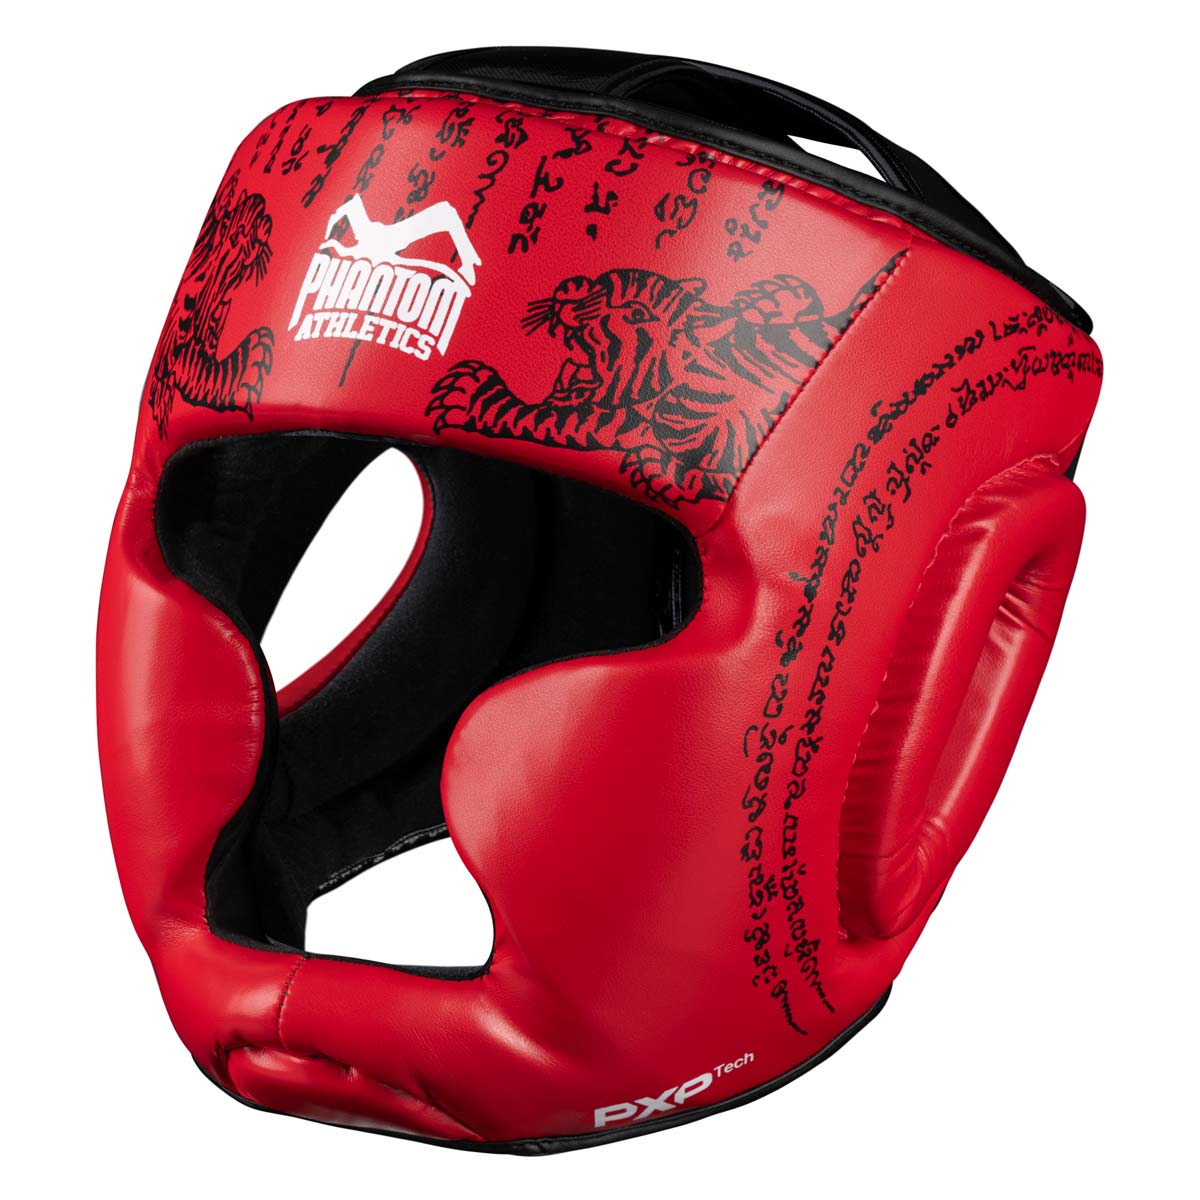 Защита на главата Phantom Muay Thai за спаринг, състезания и тренировки по тай бокс и MMA. В традиционния дизайн на Sak Yant и червения цвят.